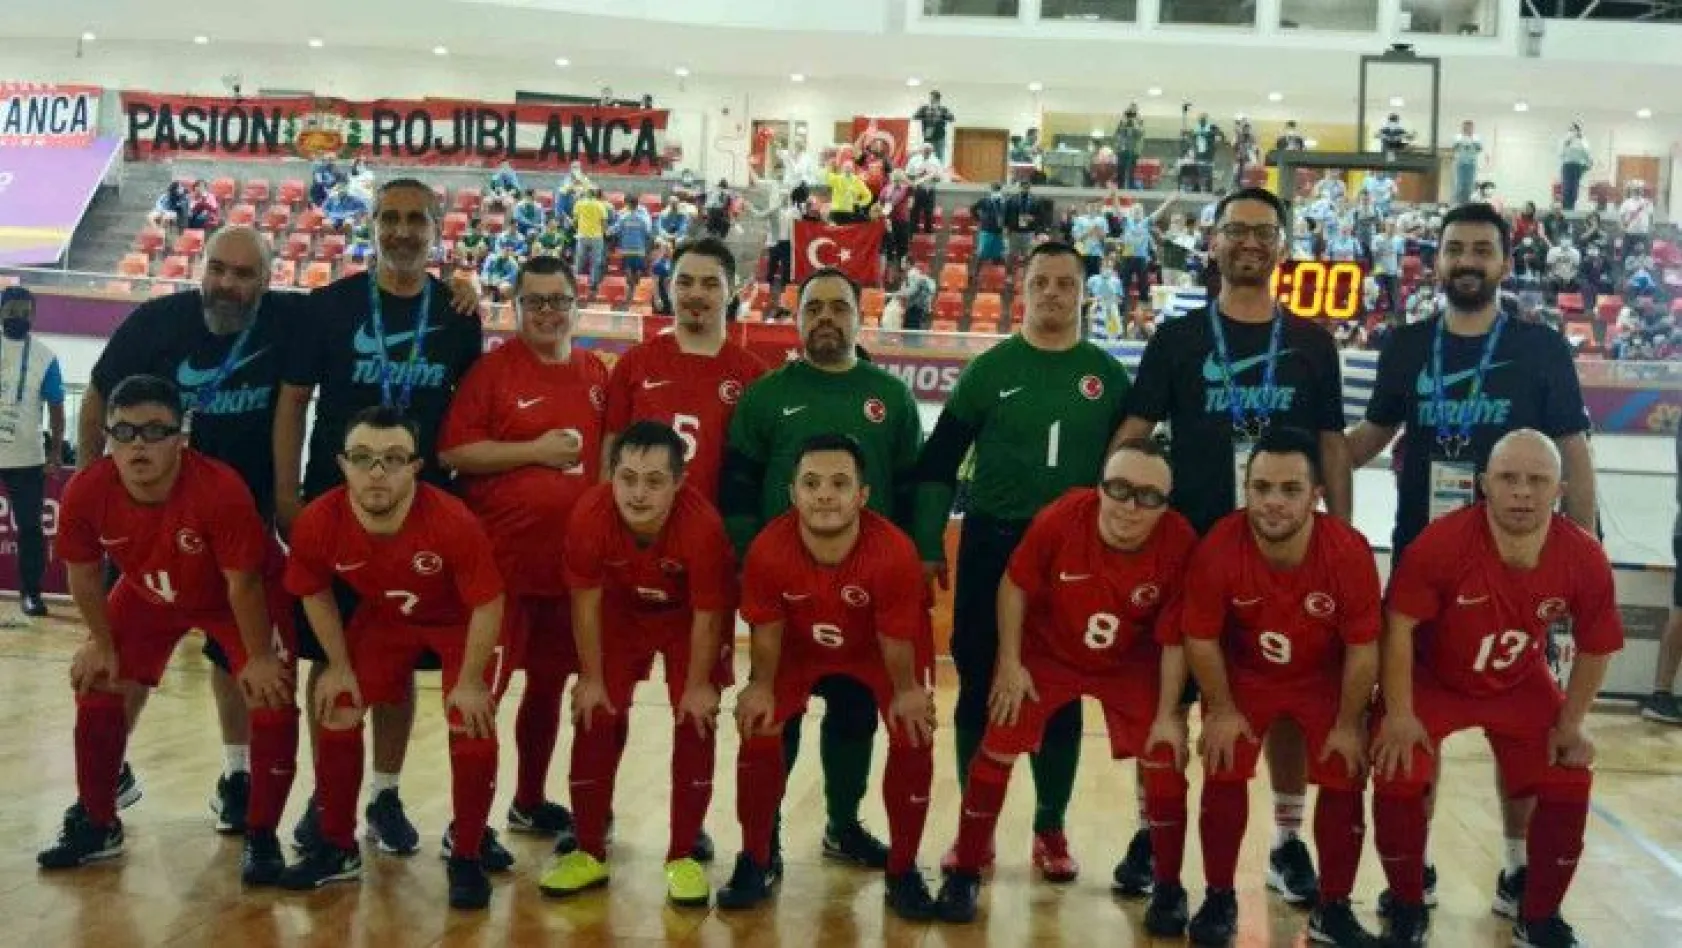 Down Sendromlu Futsal Dünya Şampiyonası